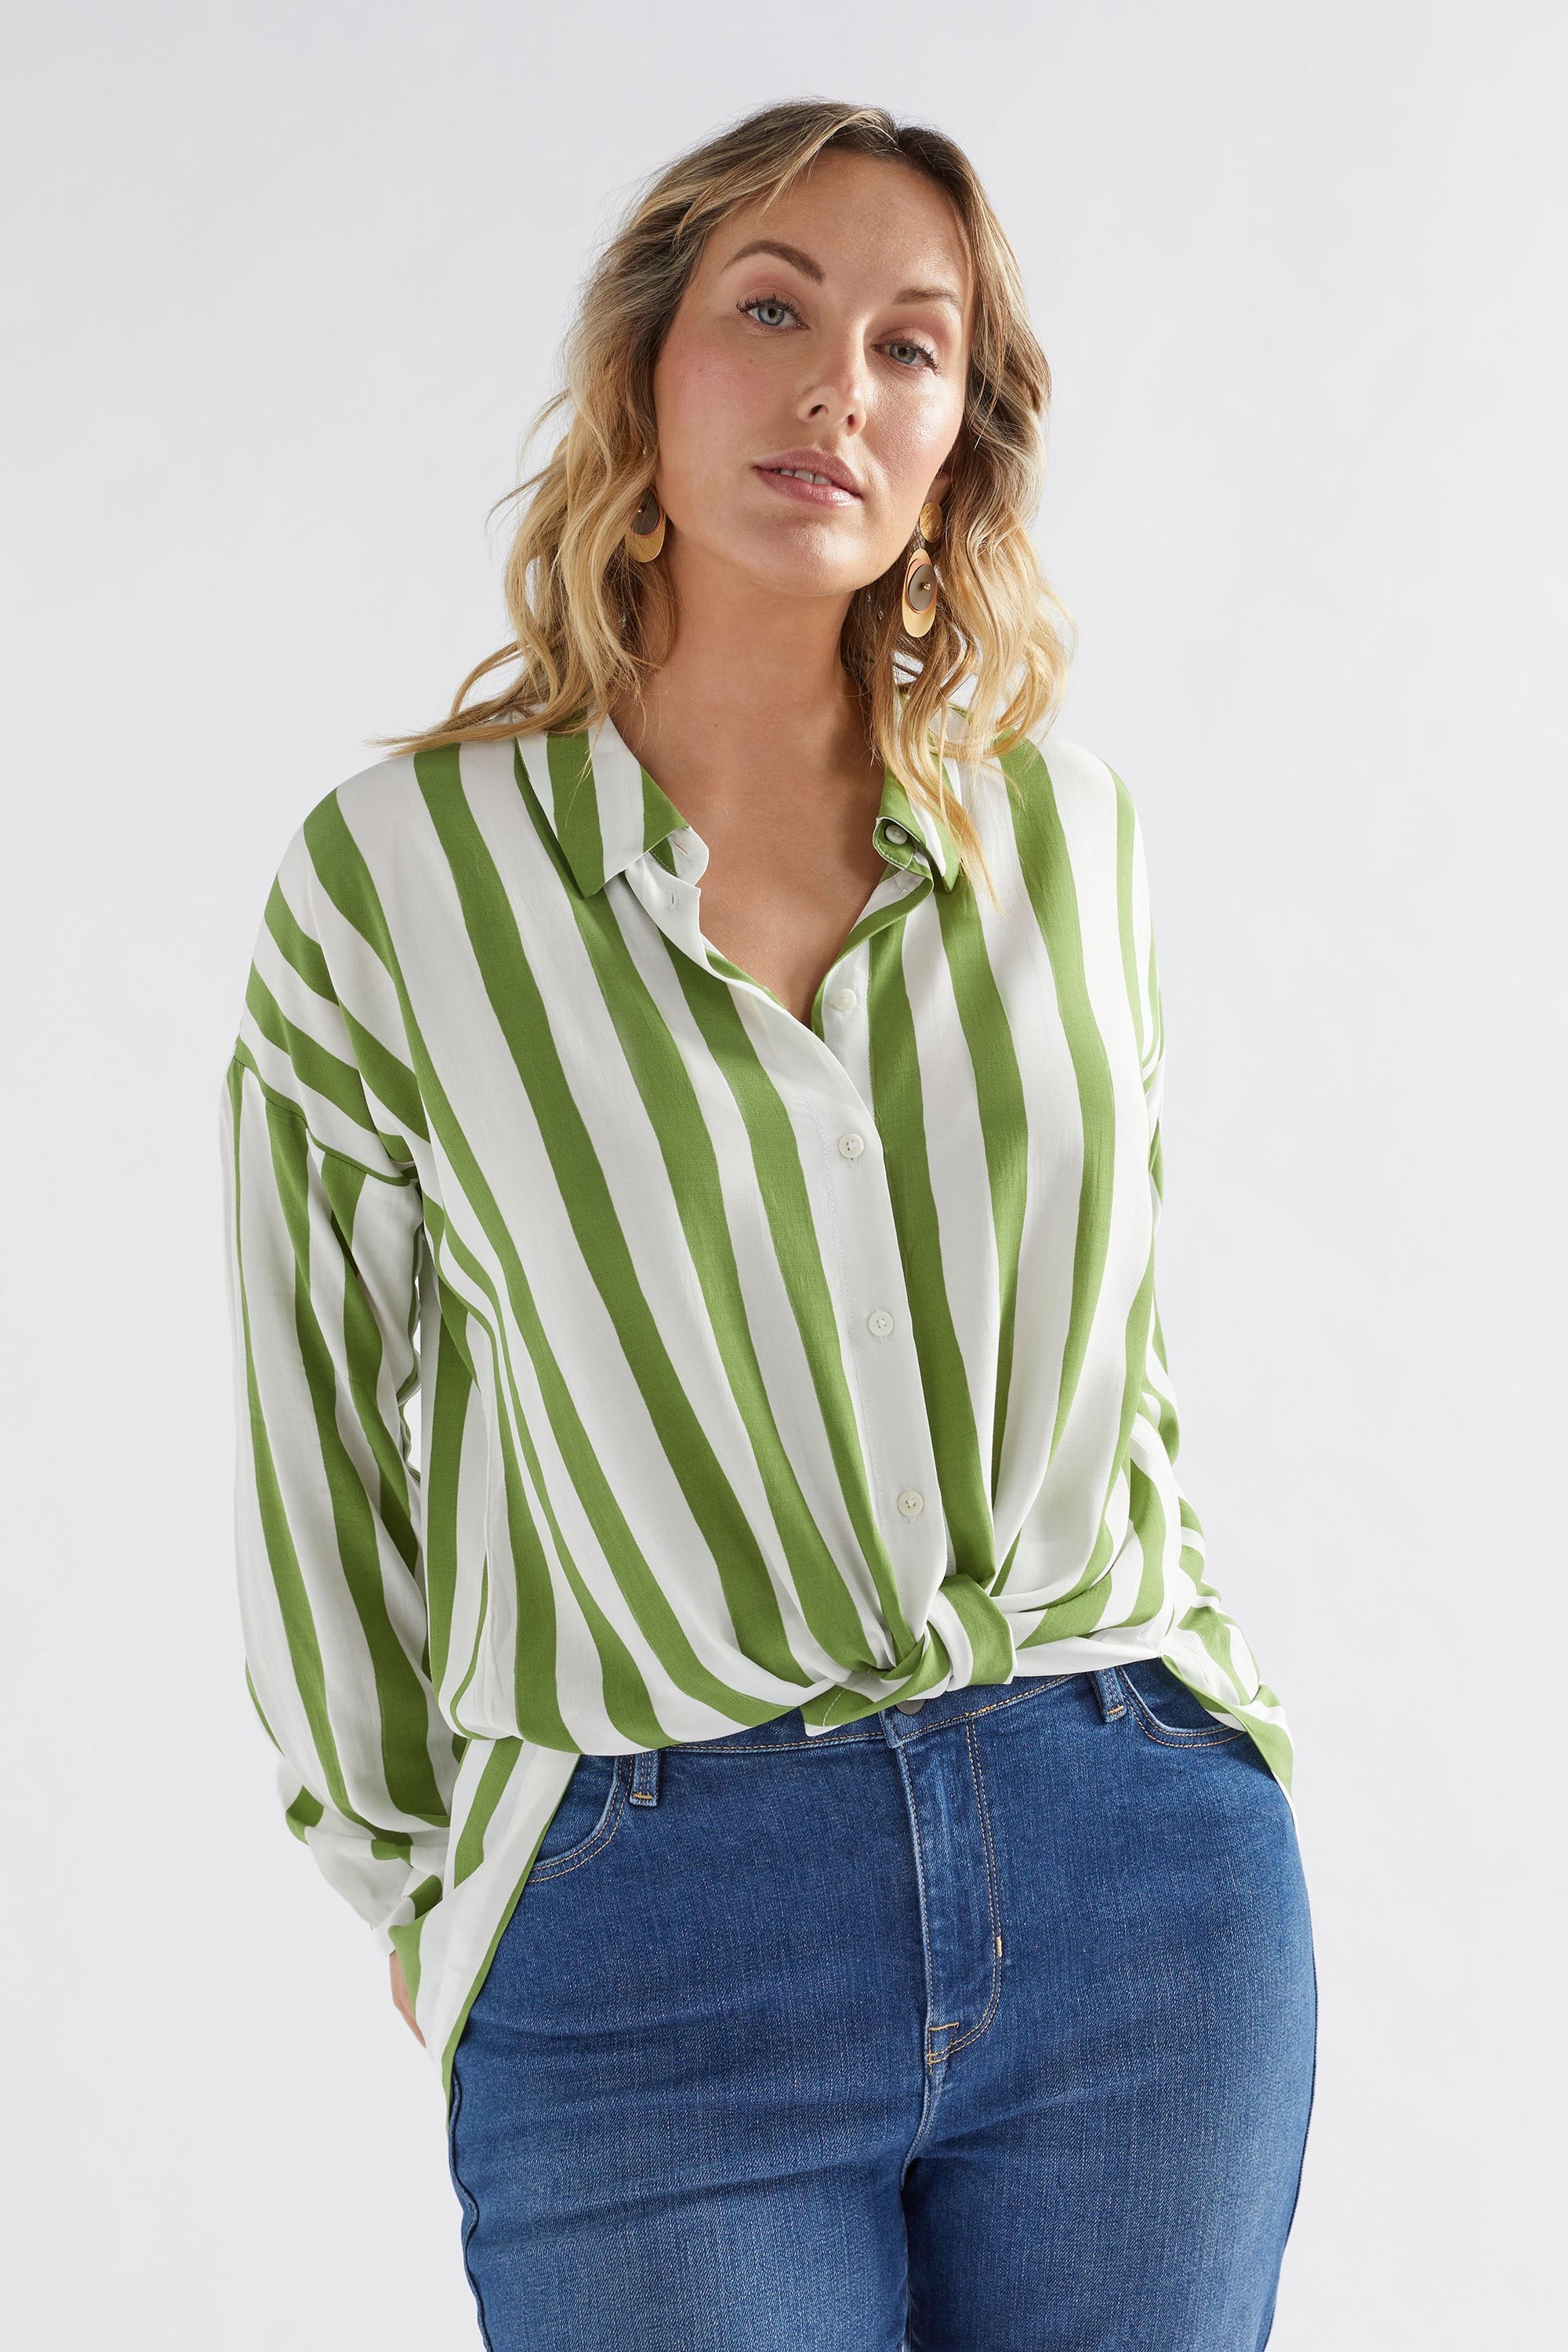 Elk Tilbe Shirt - Green / White Paint Stripe